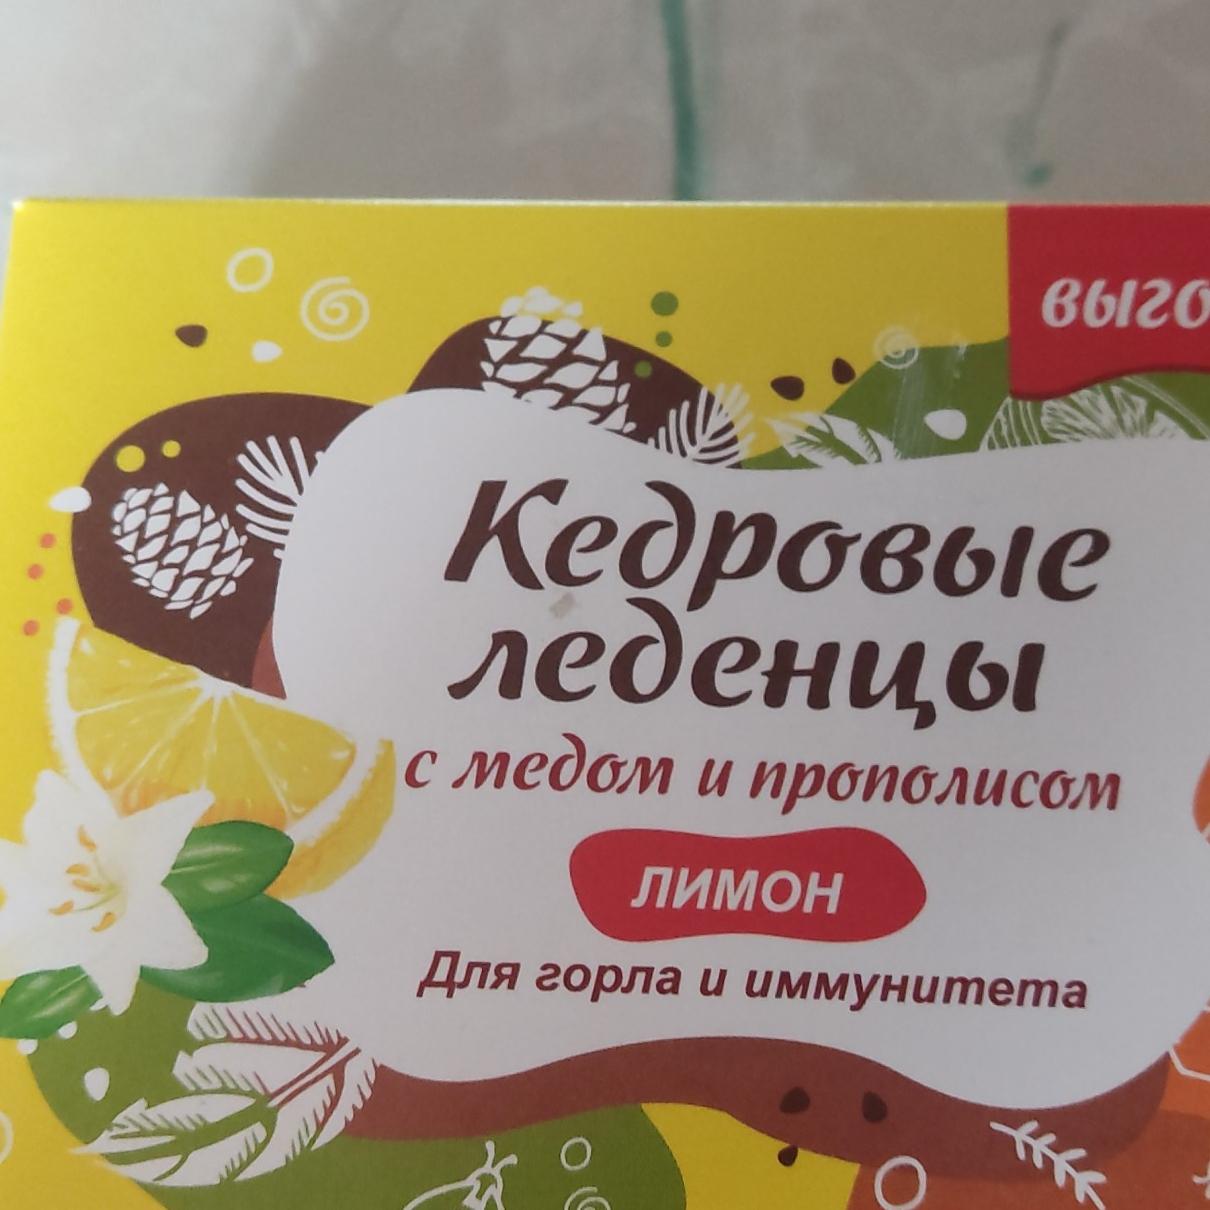 Фото - Кедровые леденцы с медом и прополисом вкус лимон для горла и иммунитета Радоград